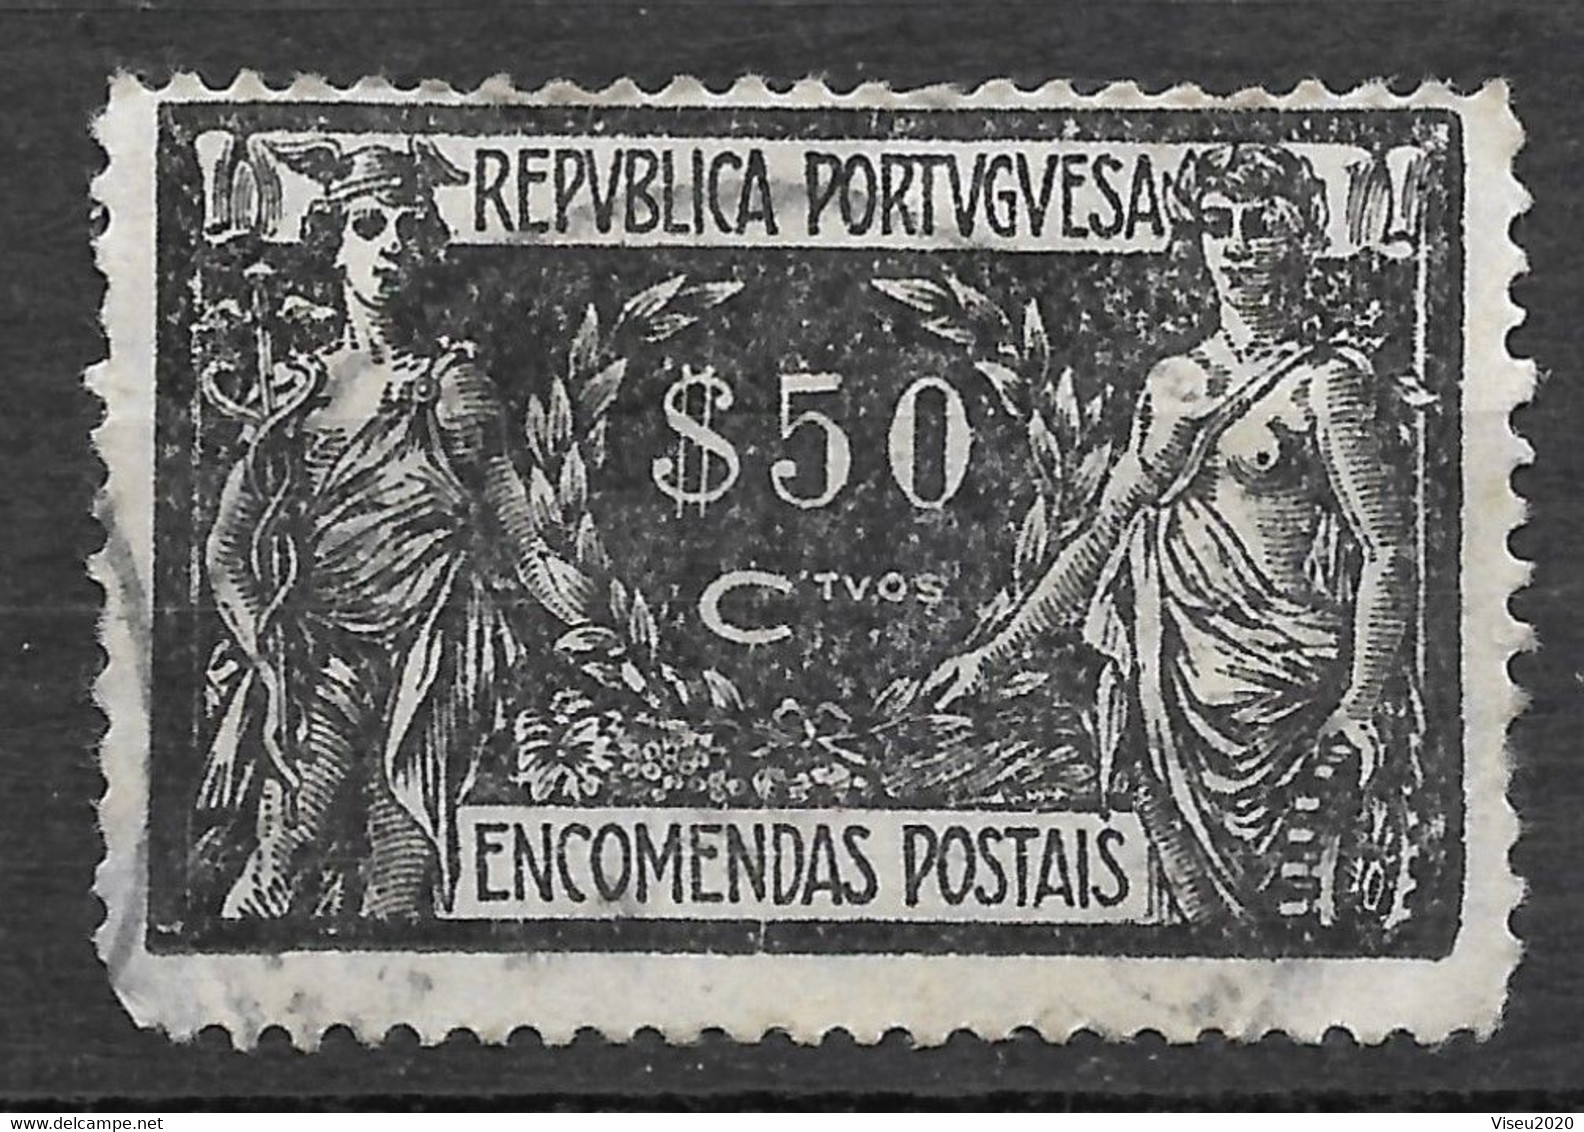 Portugal 1920 - Encomendas Postais - Comercio E Industria - Afinsa 07 - Usado